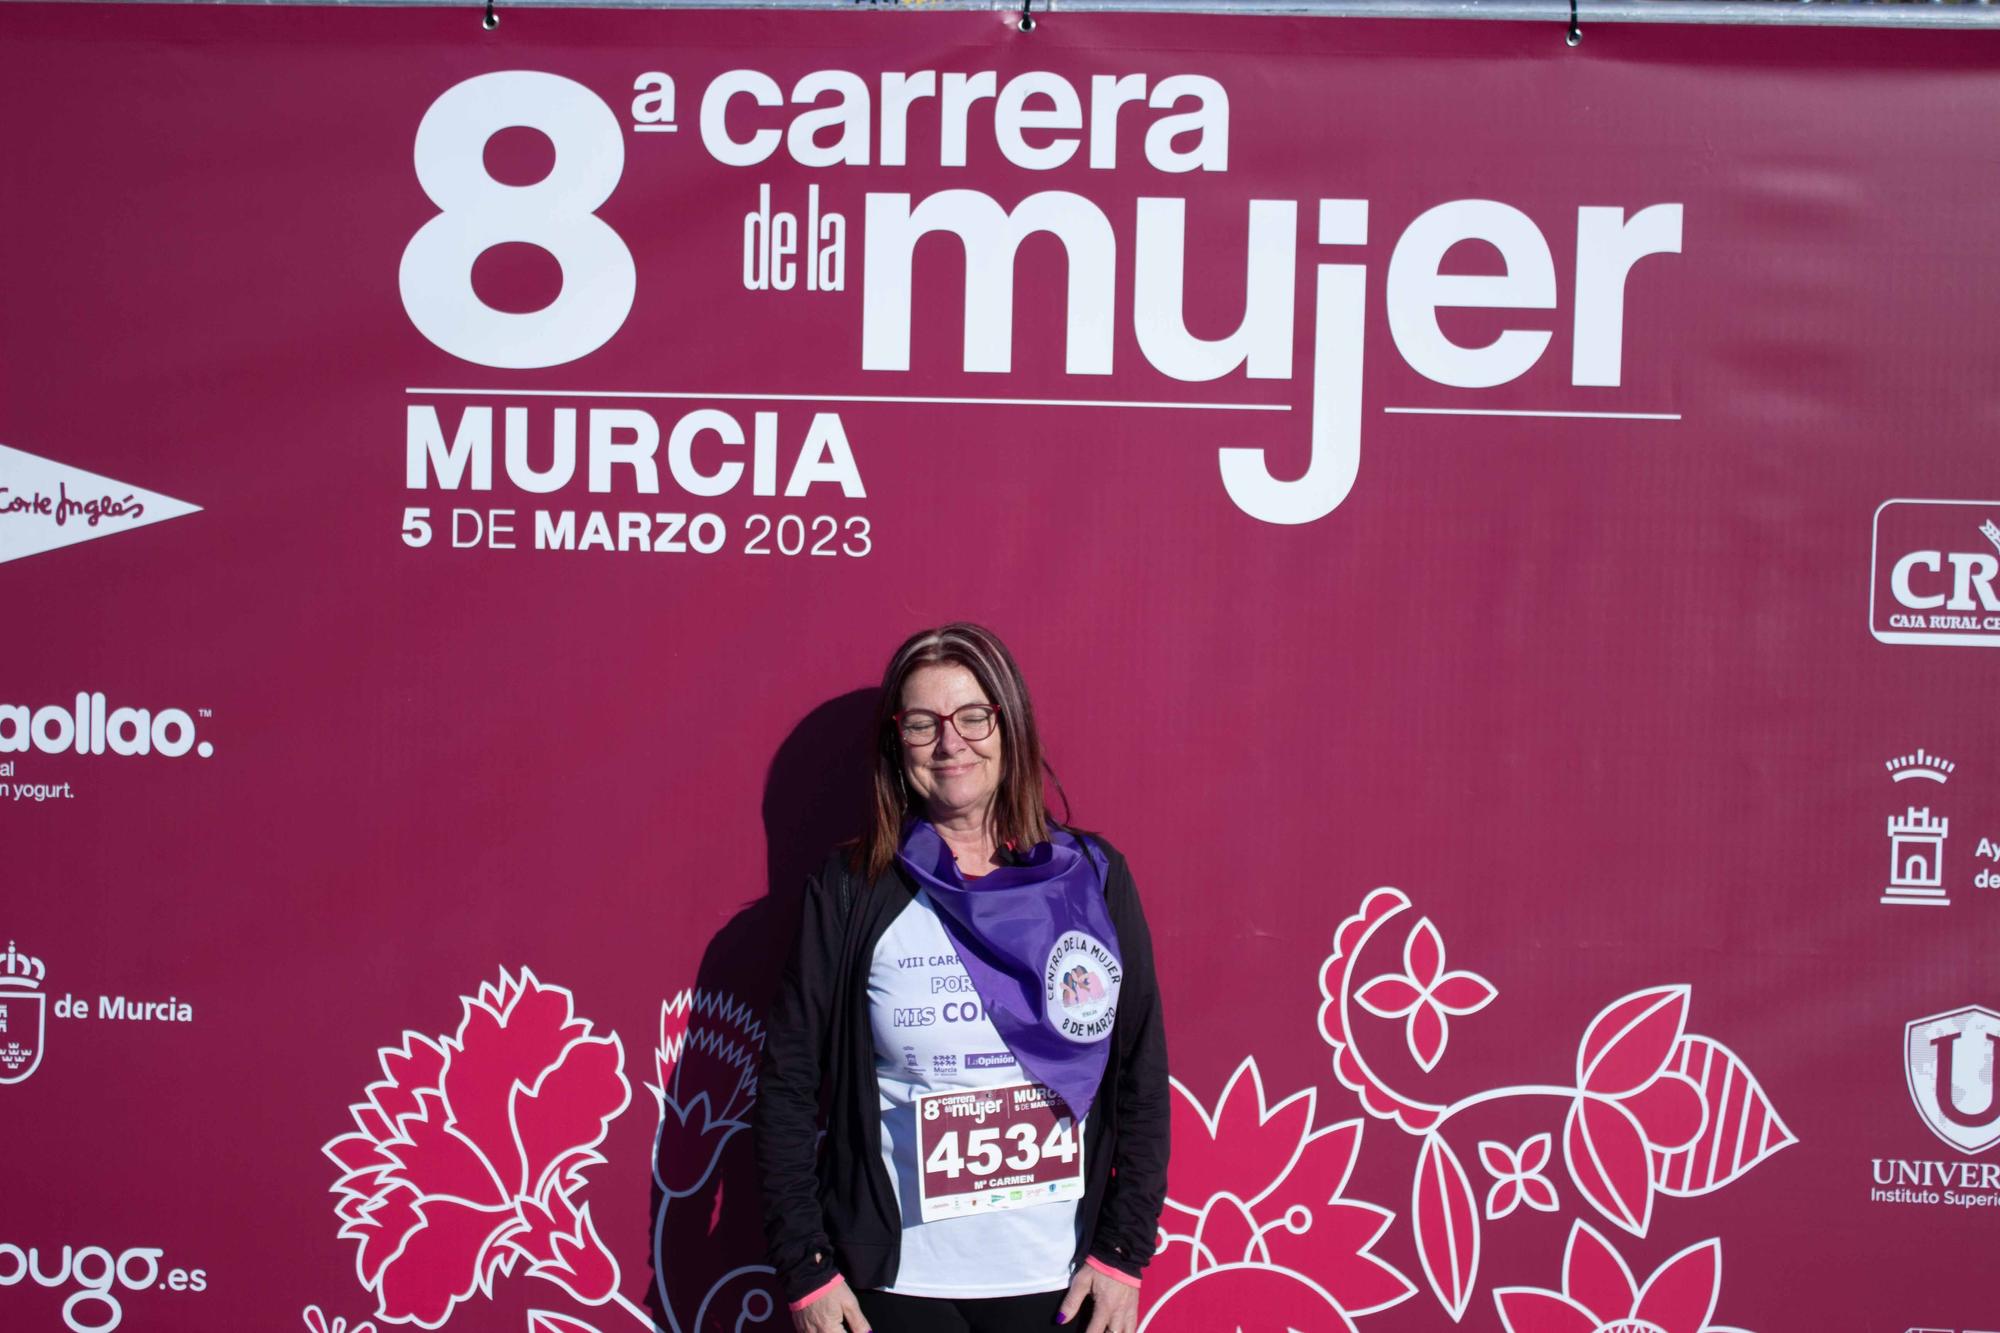 Carrera de la Mujer Murcia: Photocall (1)